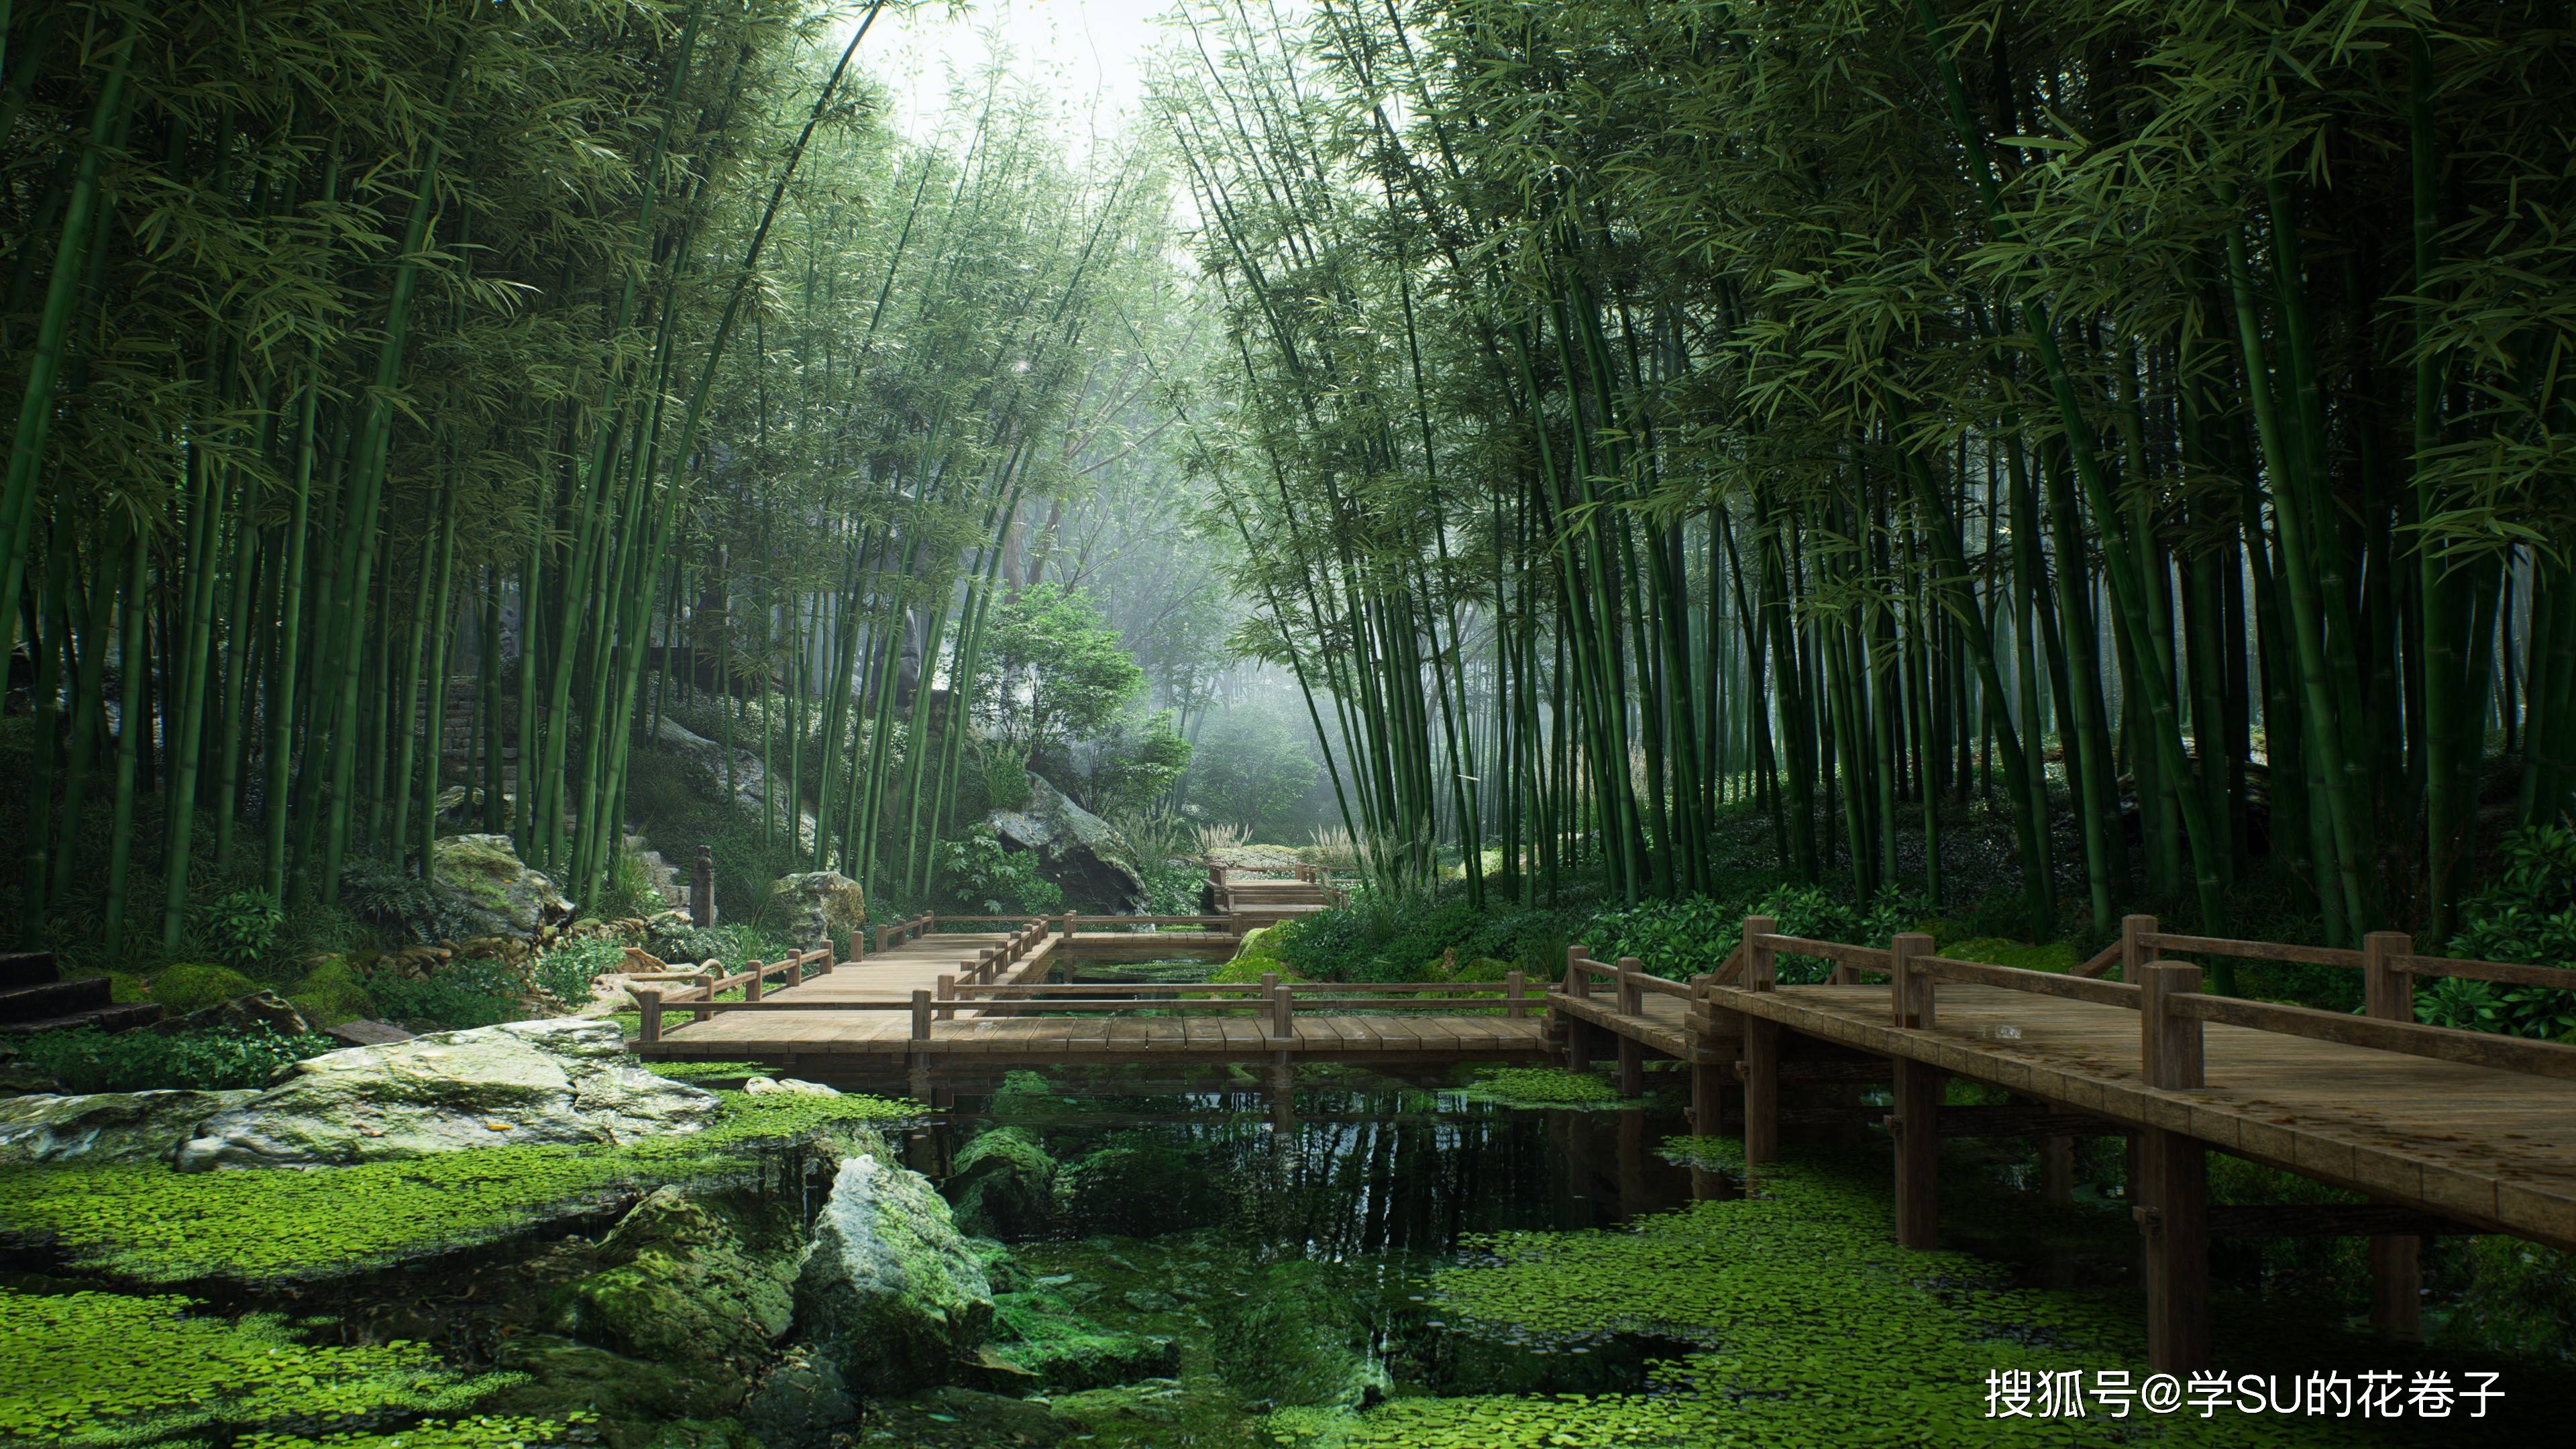 园林景观设计五大植物原则,效果图参考